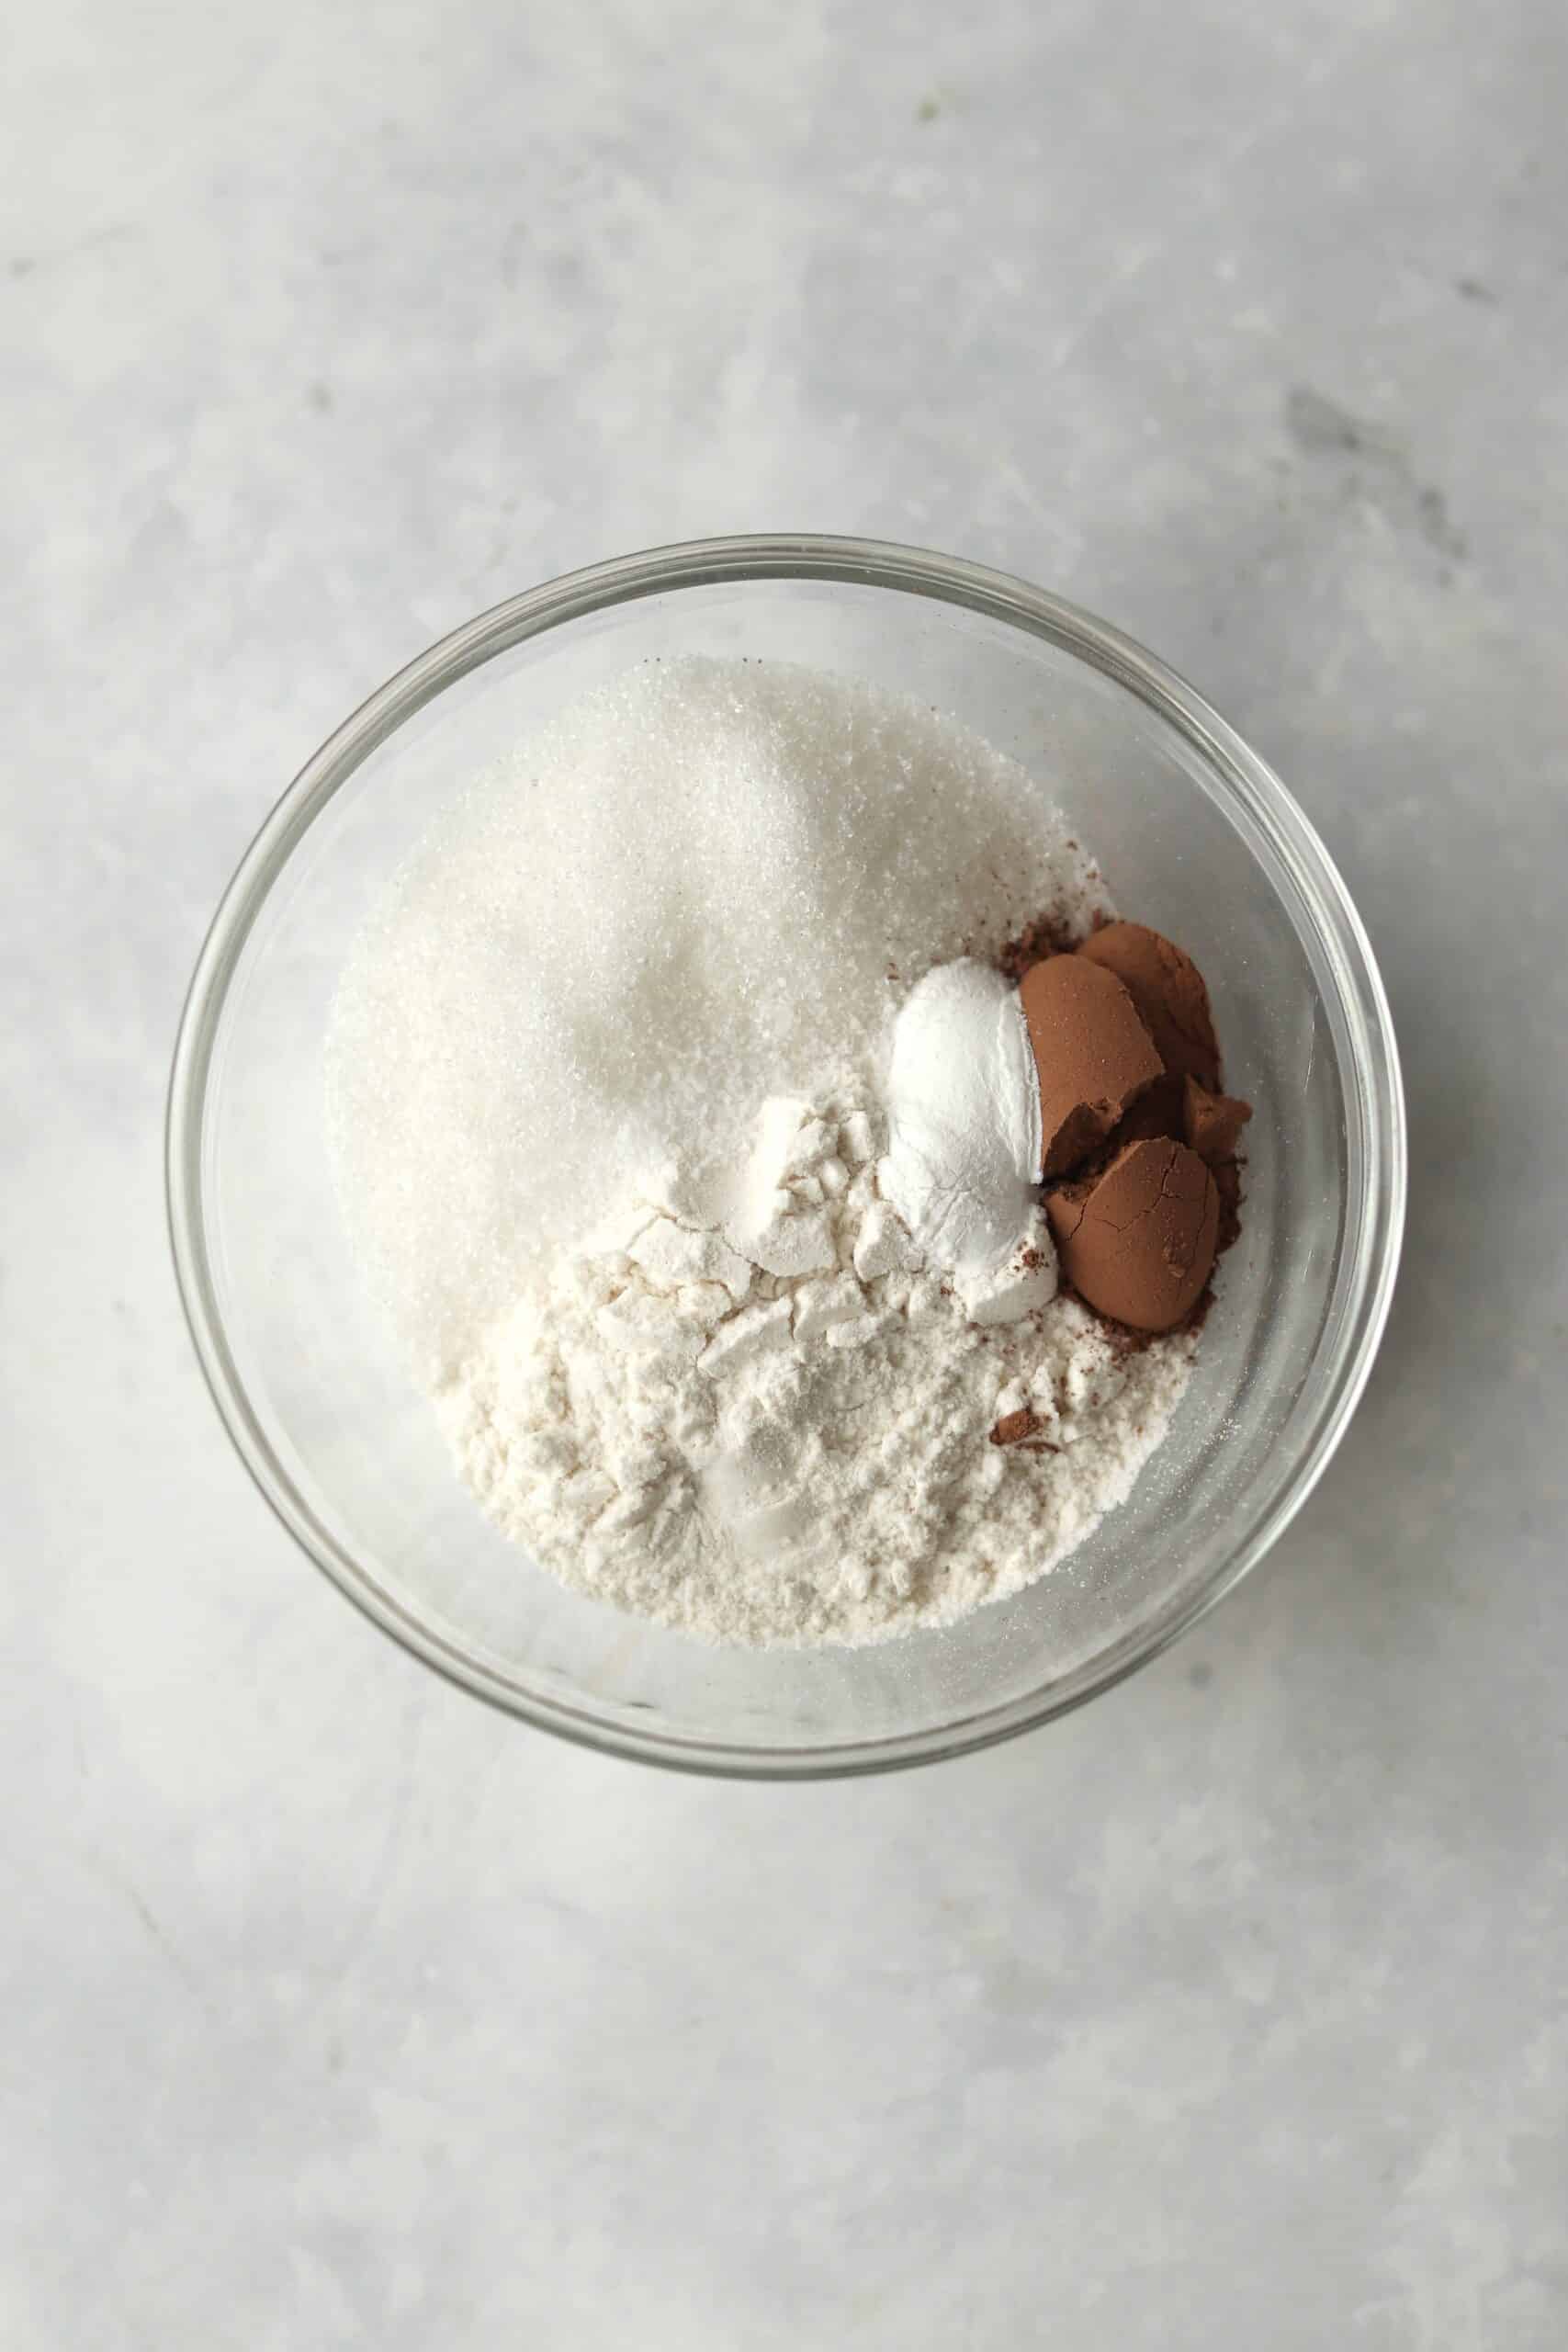 flour, cocoa powder, sugar, baking powder, and salt in a bowl